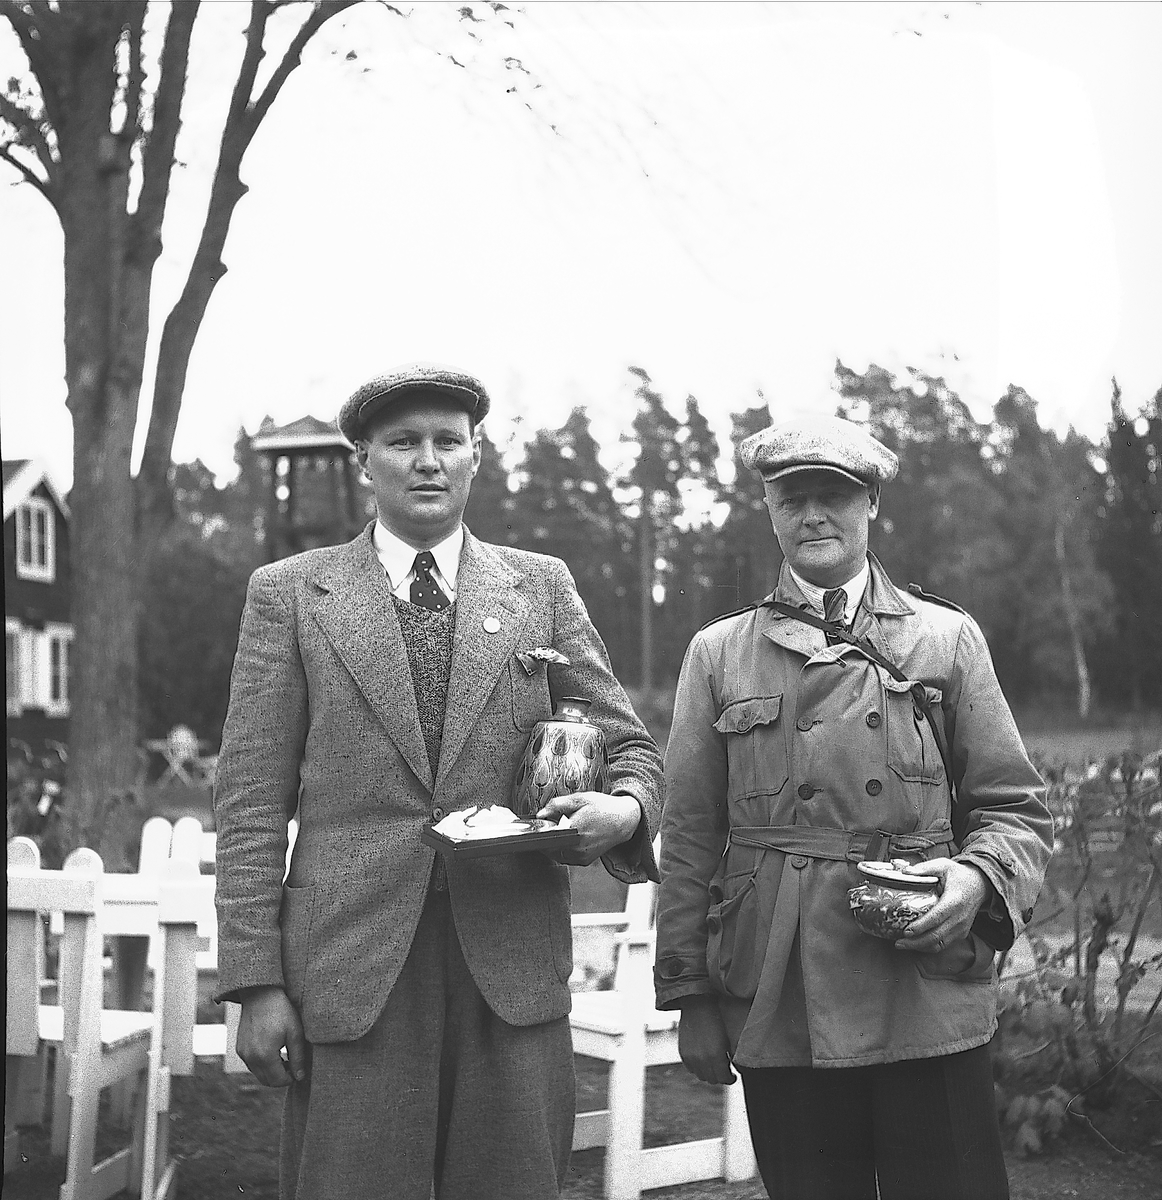 År 1938. Korparations skjutning. Reportage för Gefle-Posten

